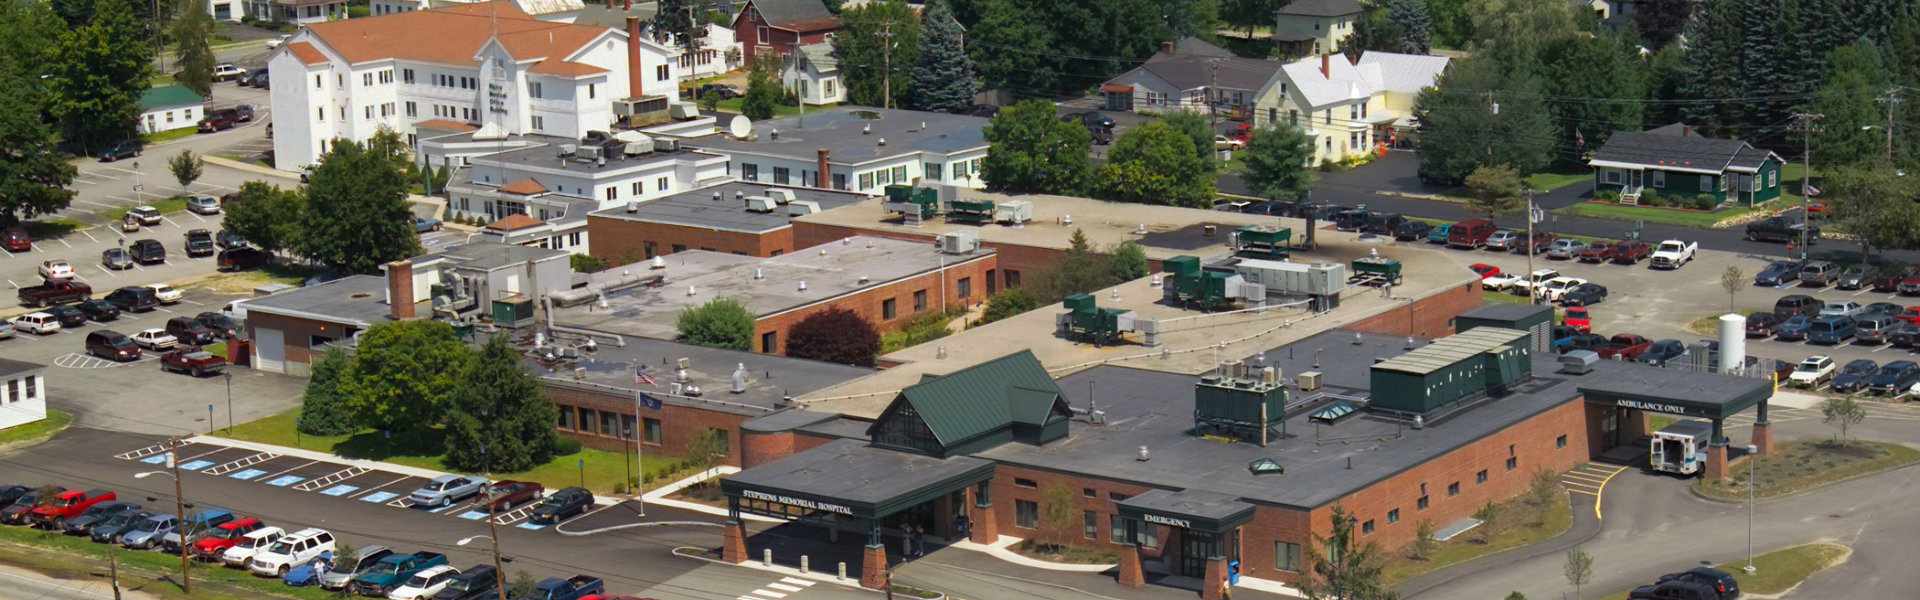 Aerial view of Stephens Memorial Hospital in Norway, Maine